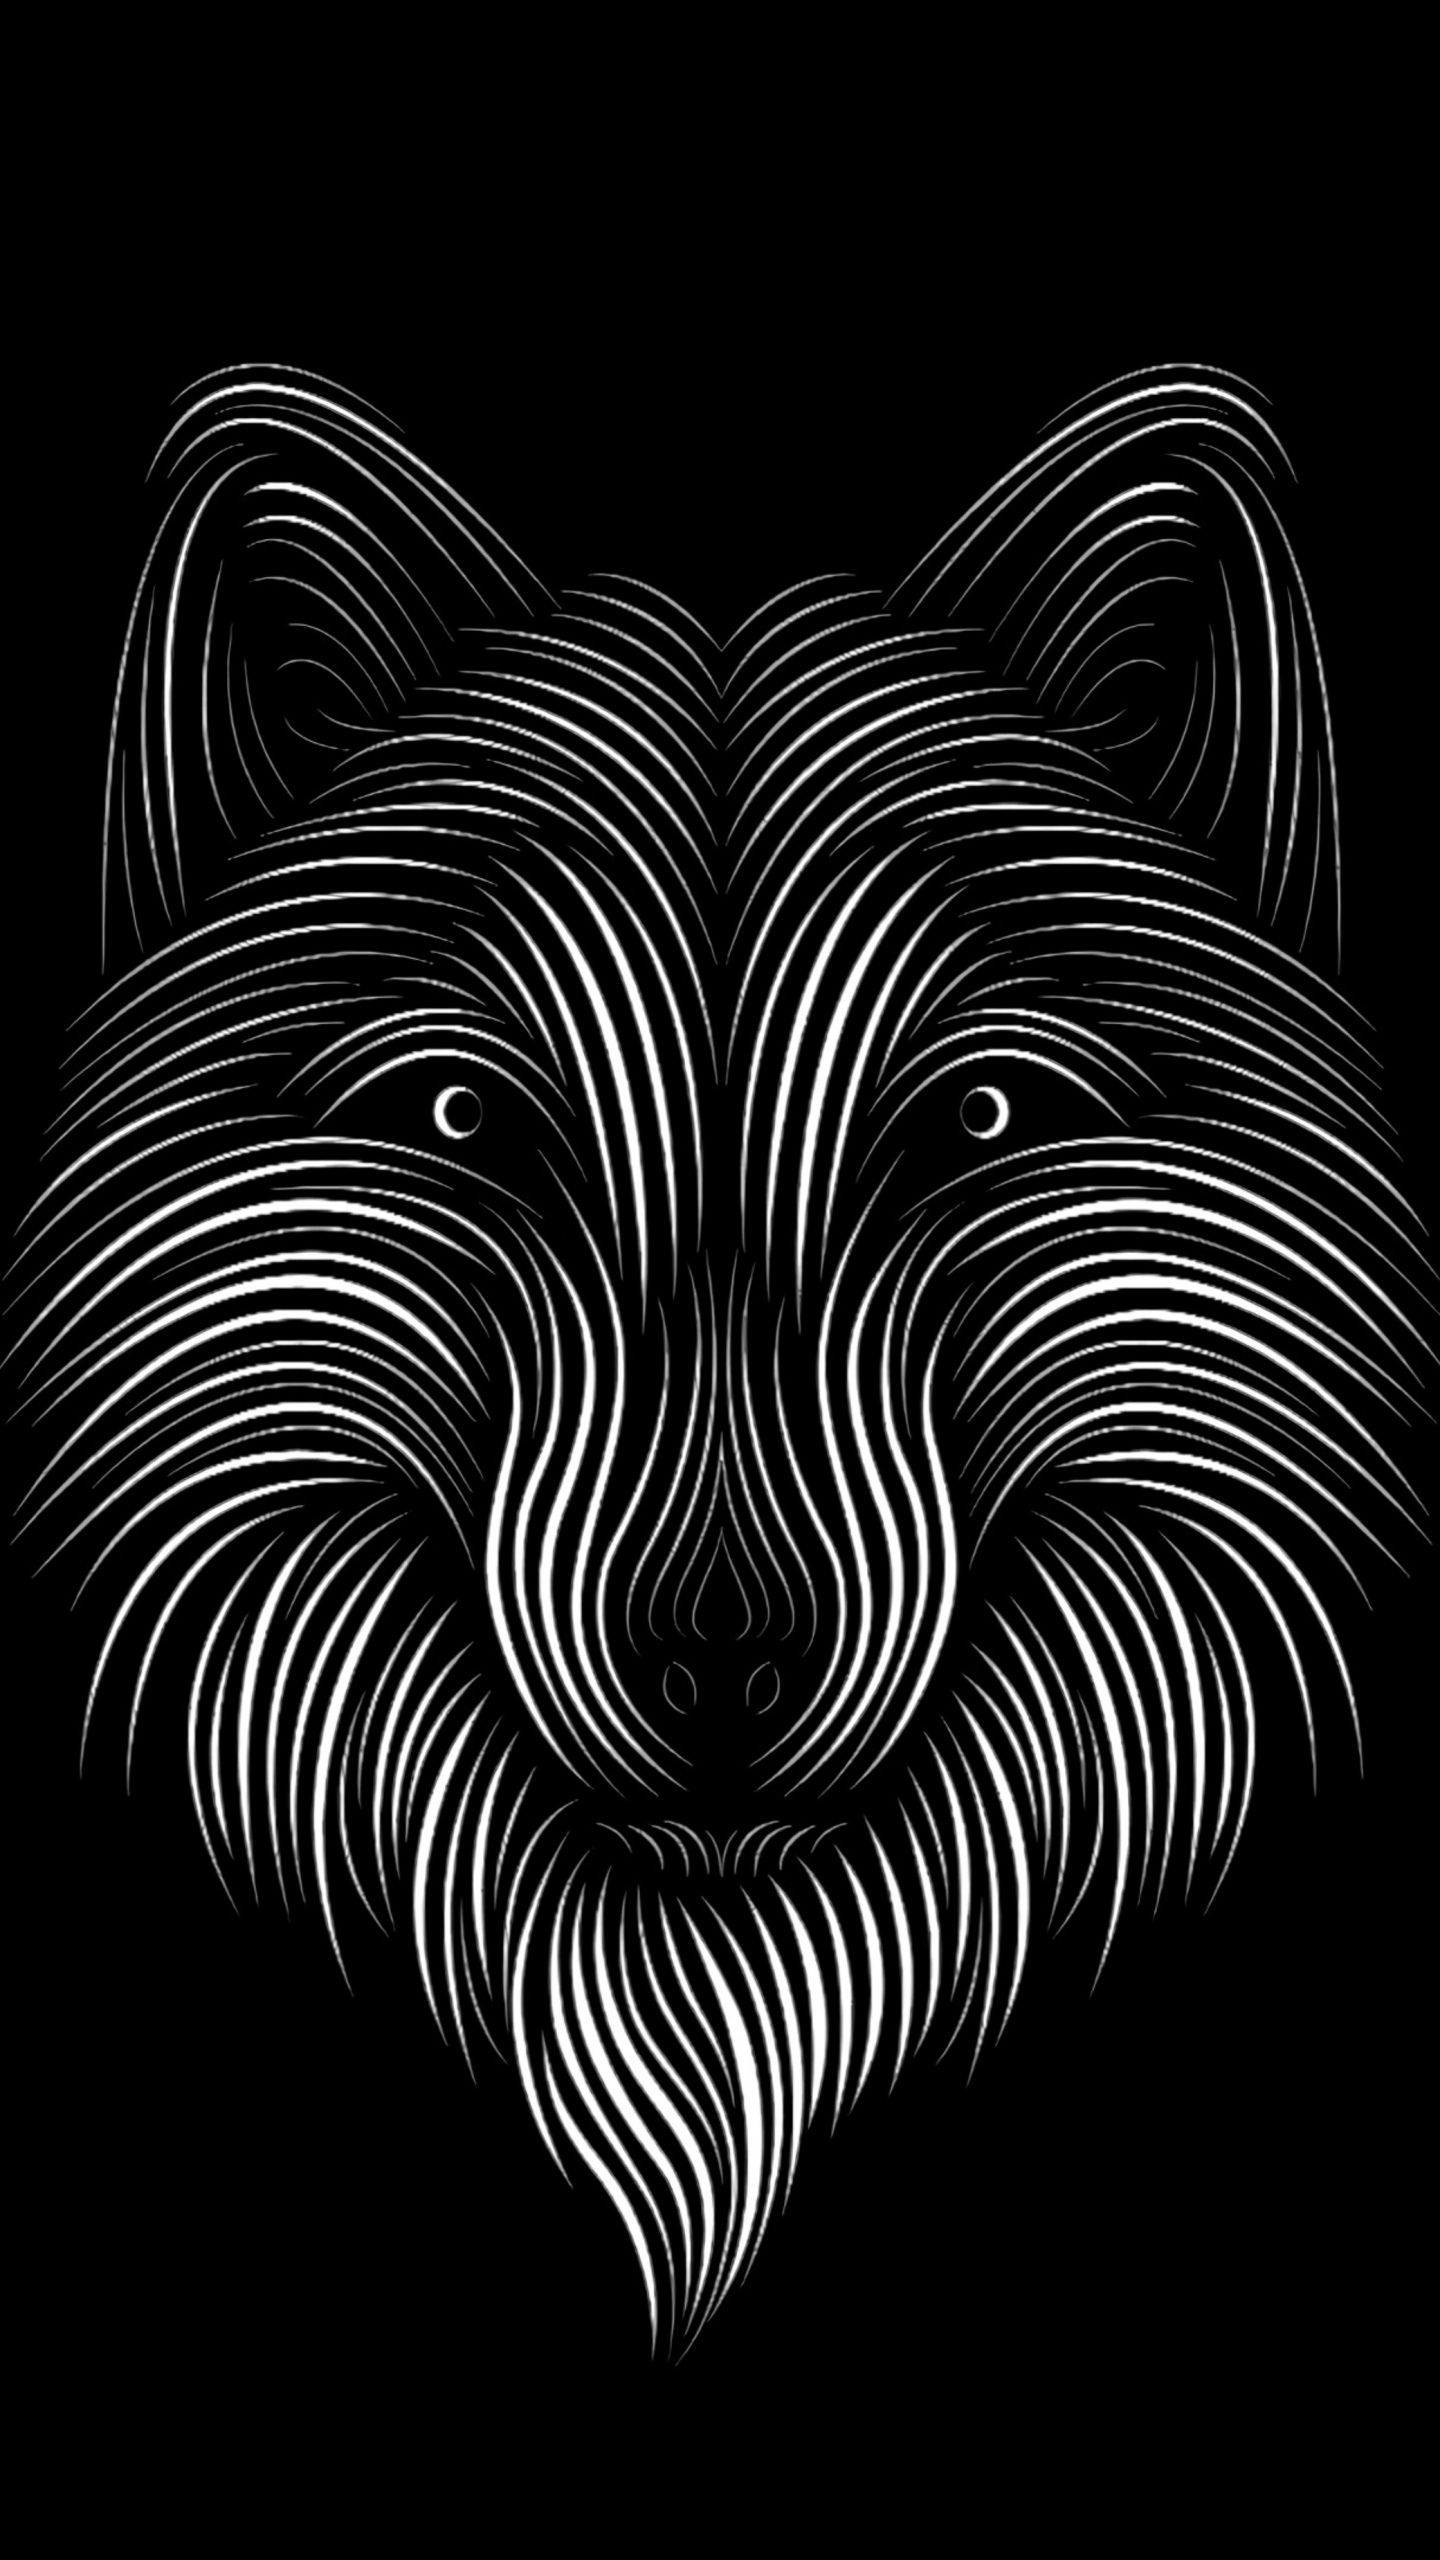 Schwarz-Weiß-Zebra-Illustration. Wallpaper in 1440x2560 Resolution